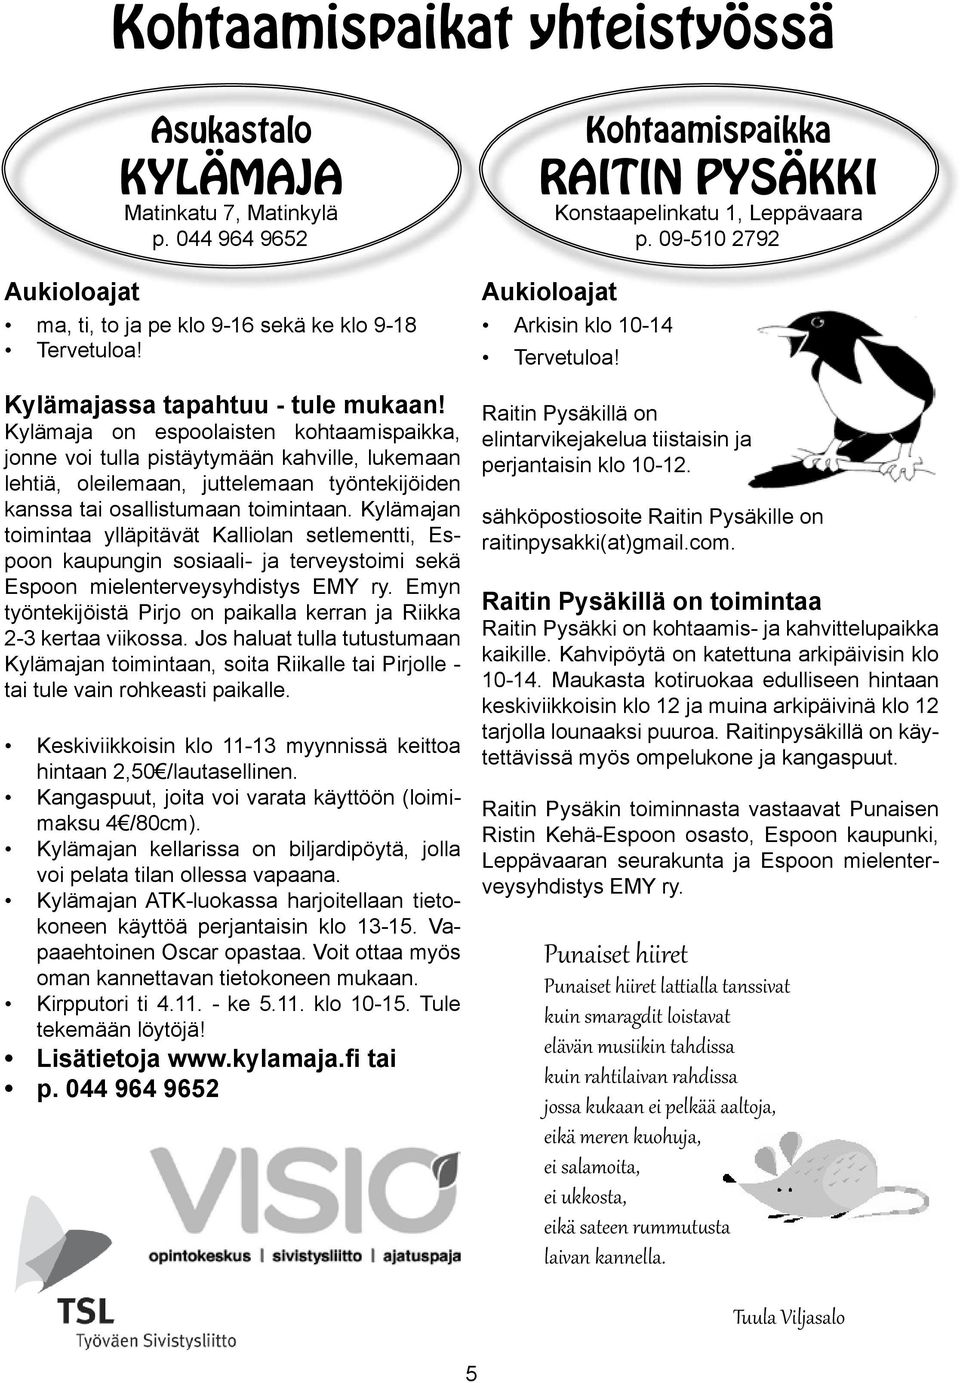 Kylämajan toimintaa ylläpitävät Kalliolan setlementti, Espoon kaupungin sosiaali- ja terveystoimi sekä Espoon mielenterveysyhdistys EMY ry.